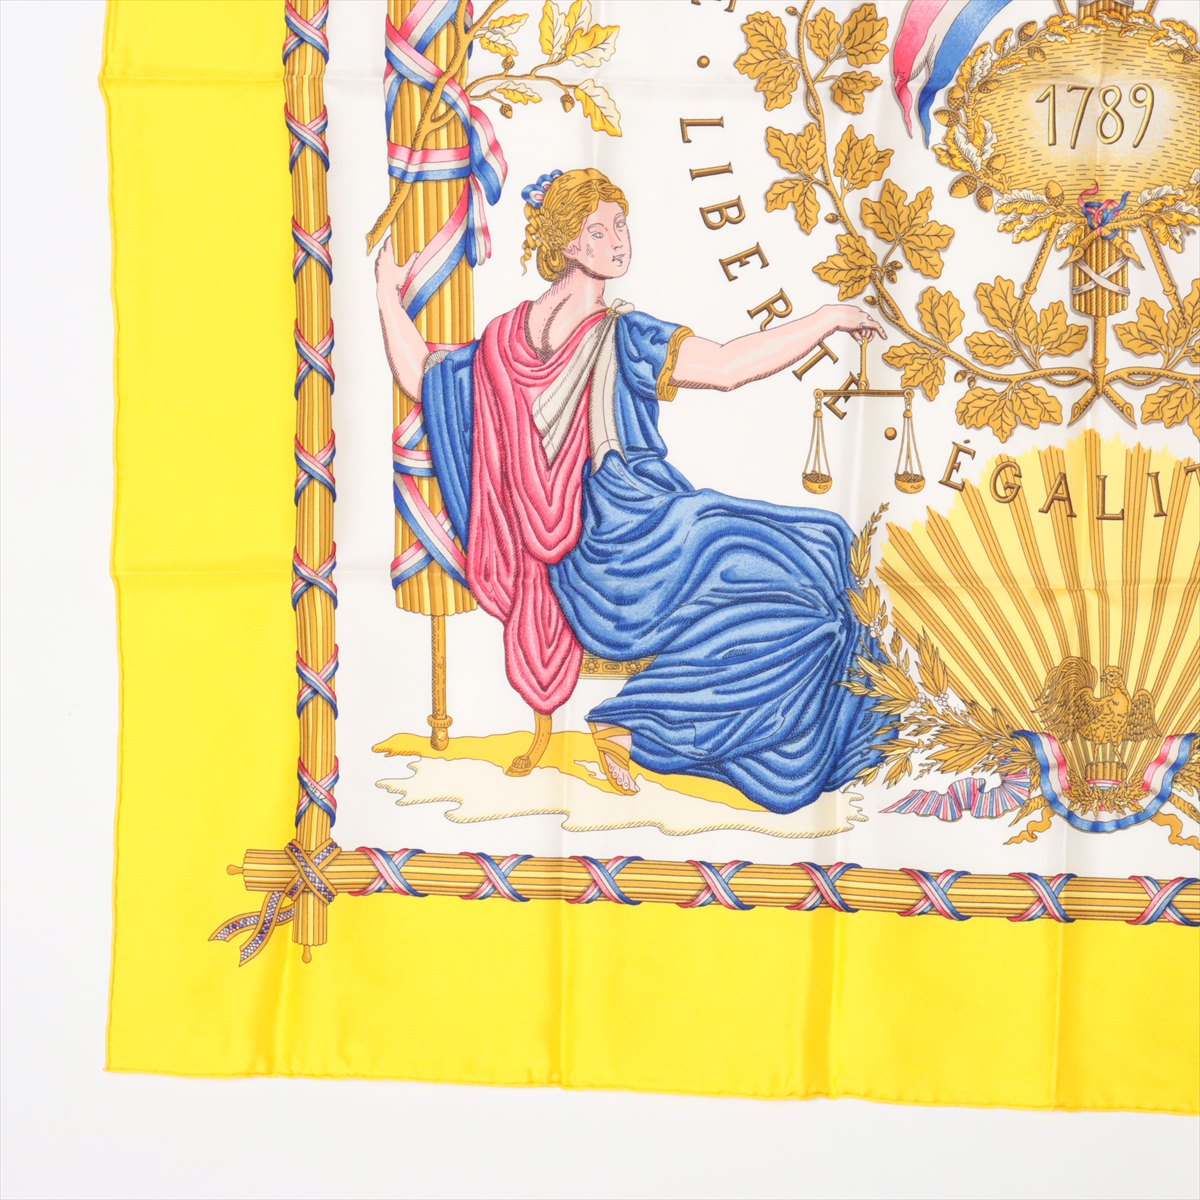 エルメス カレ90 1789 LIBERTE EGALITE FRATERNITE REPUBLIQUE FRANCAISE フランス革命を記念して スカーフ シルク イエロー